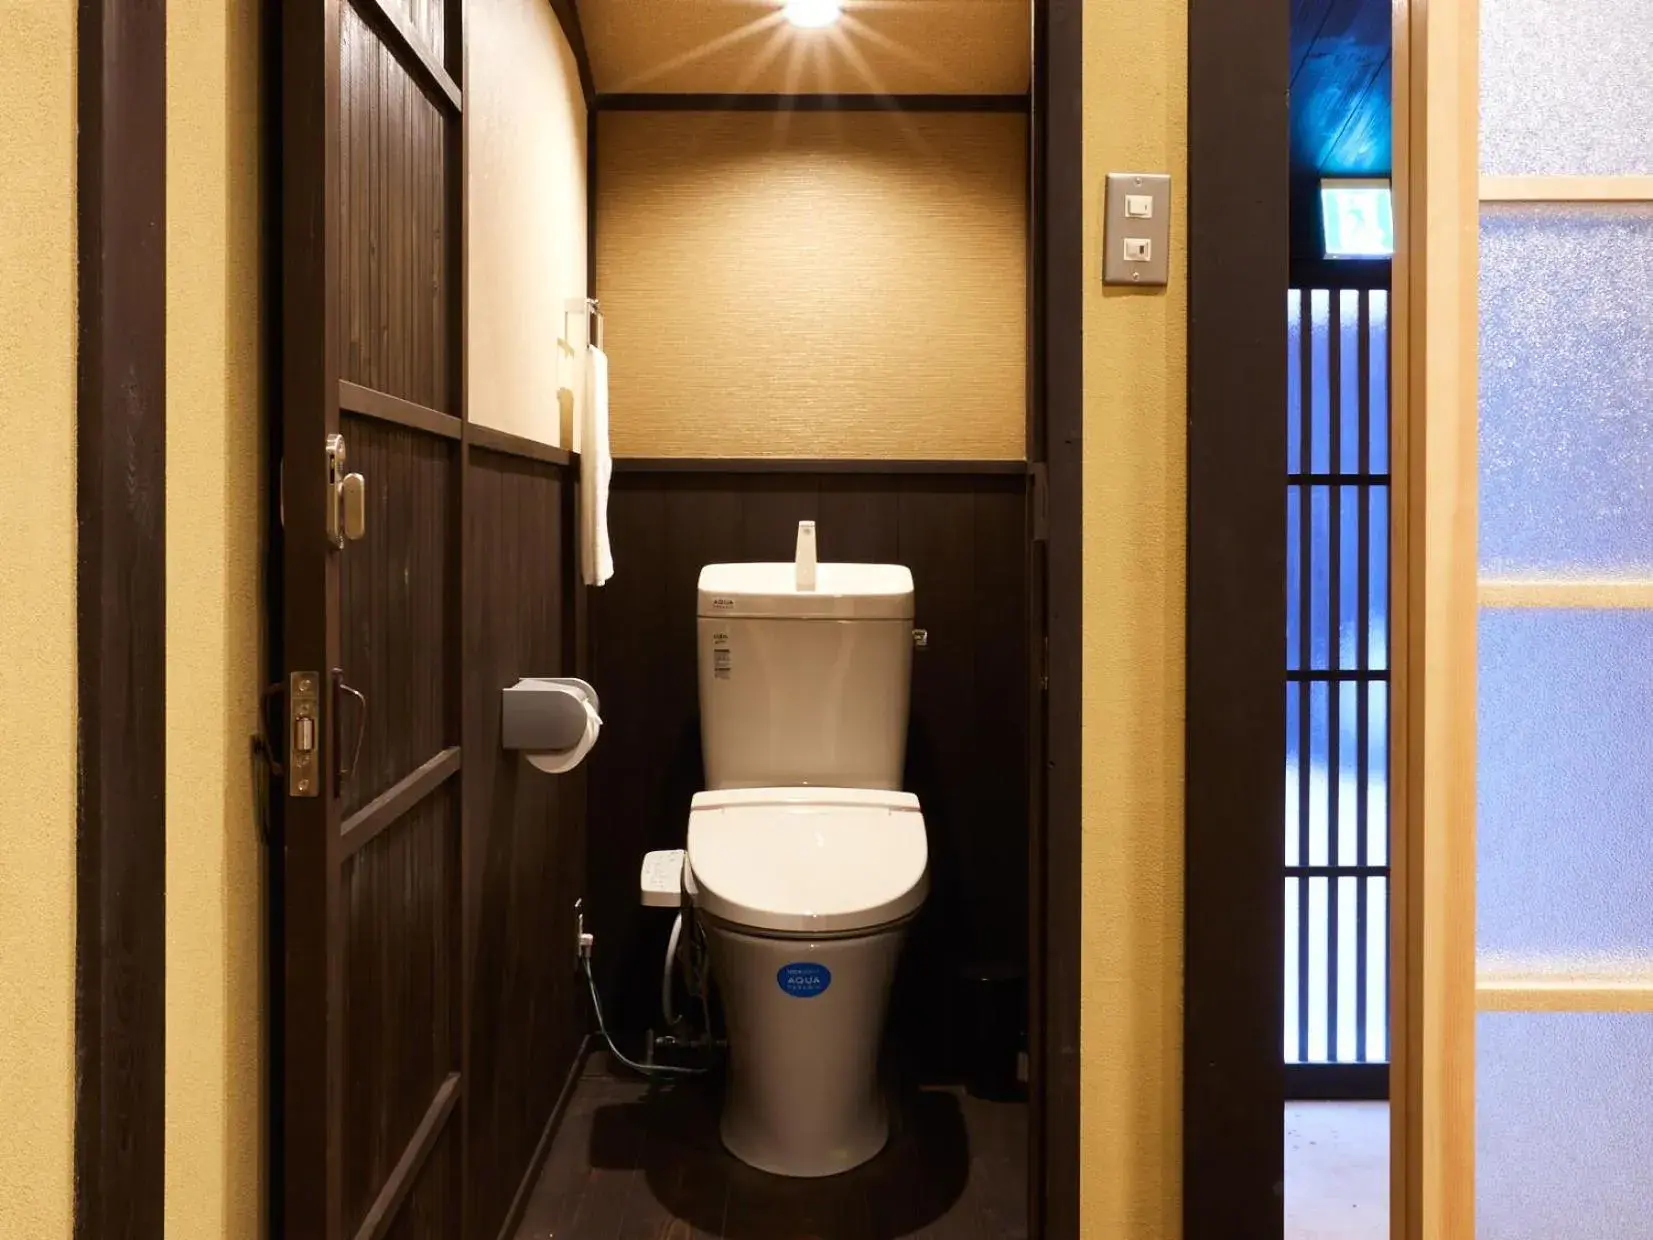 Toilet, Bathroom in Rinn Umekoji